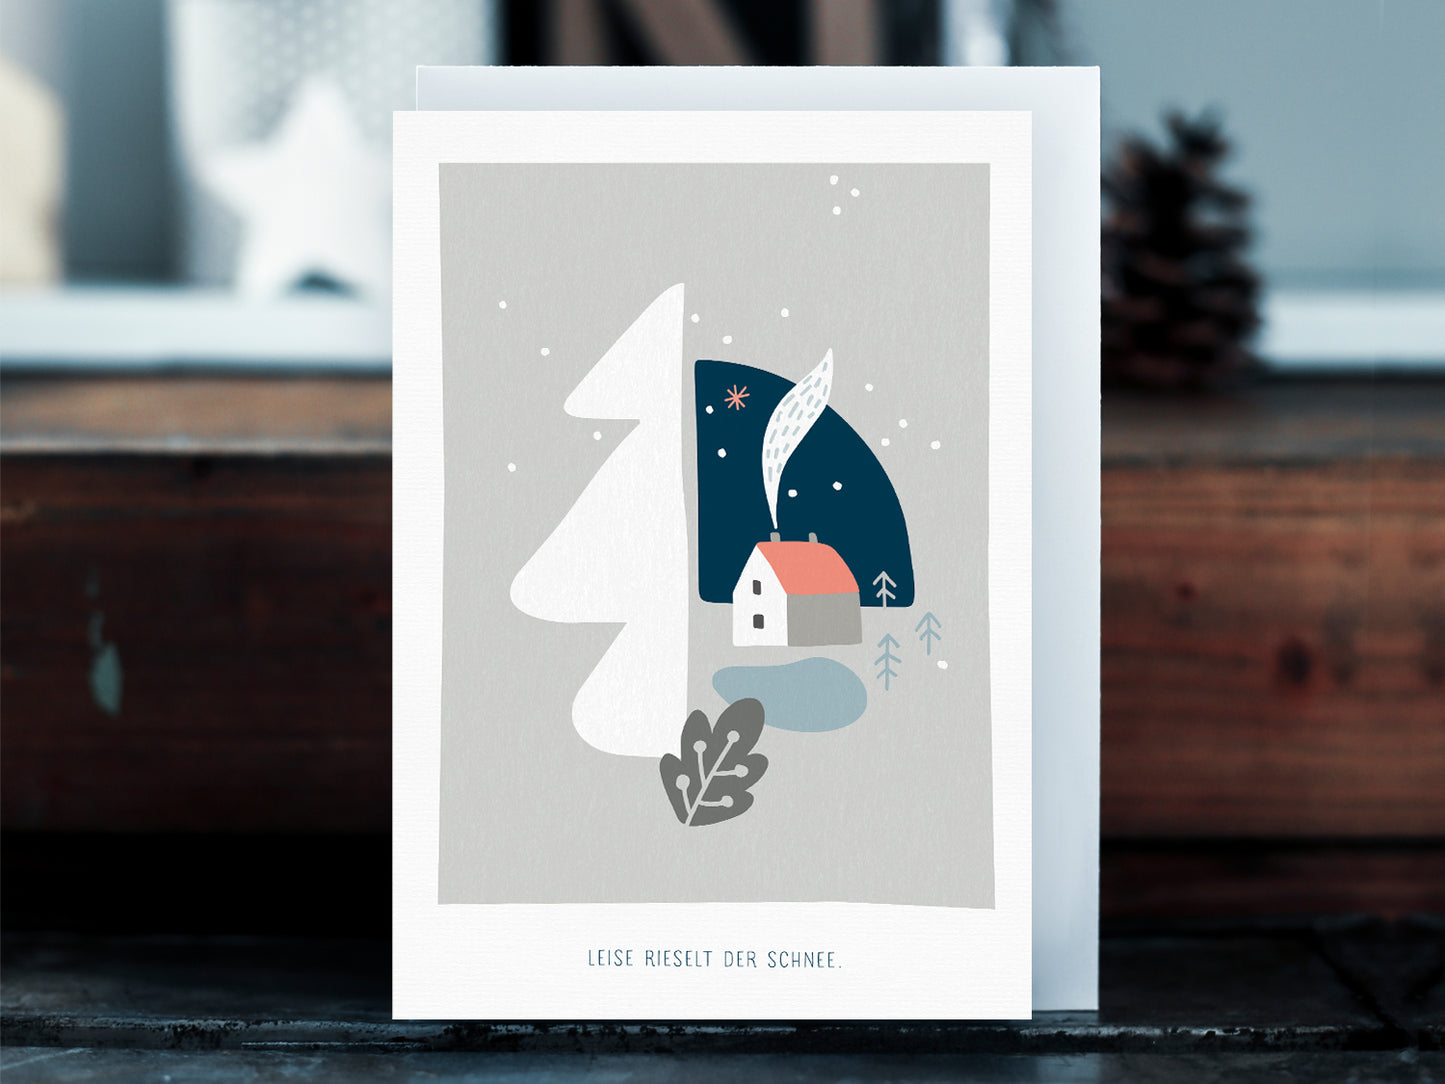 Weihnachtskarte im Scandi Nordic Stil als kleiner Postkartengruß, illustriert mit einer ruhigen, verschneiten Winterlandschaft und dem Spruch »Leise rieselt der Schnee«, in sanften Pastellfarben.  Durch die gedeckten Pastelltöne und minimalistischem Nordic Design zaubert diese Weihnachtskarte eine gemütliche Atmosphäre unter den Tannenbaum.